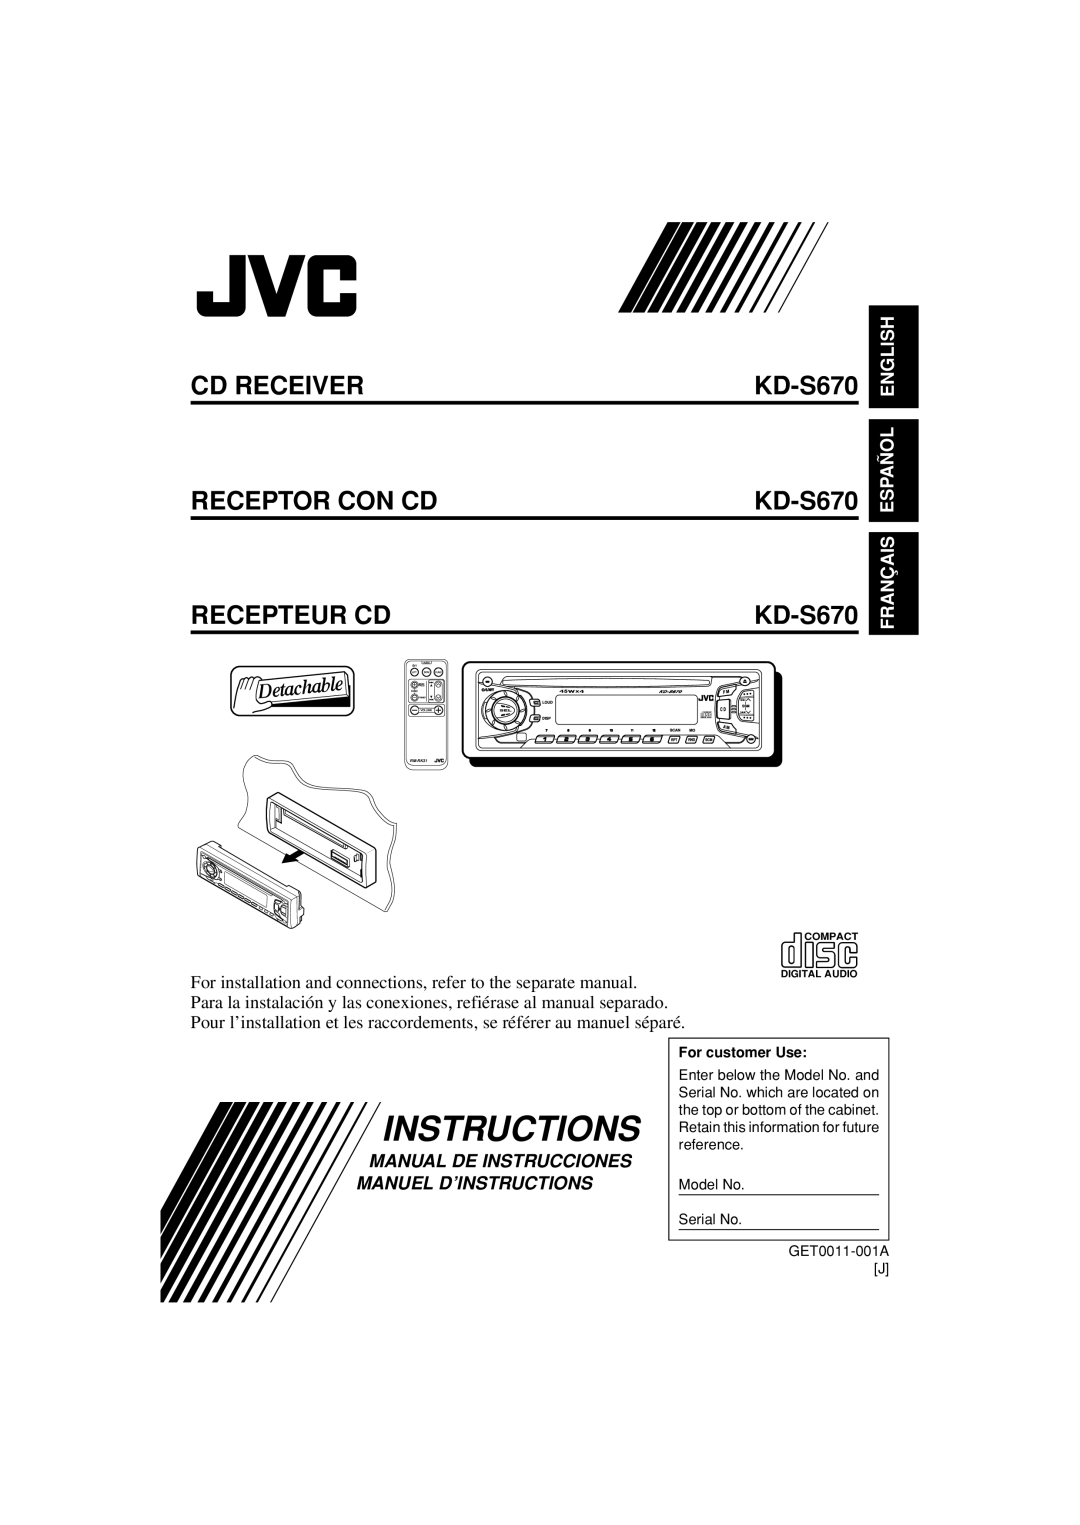 JVC KD-S670 manual English, Español, Français, Manual De Instrucciones Manuel D’Instructions 